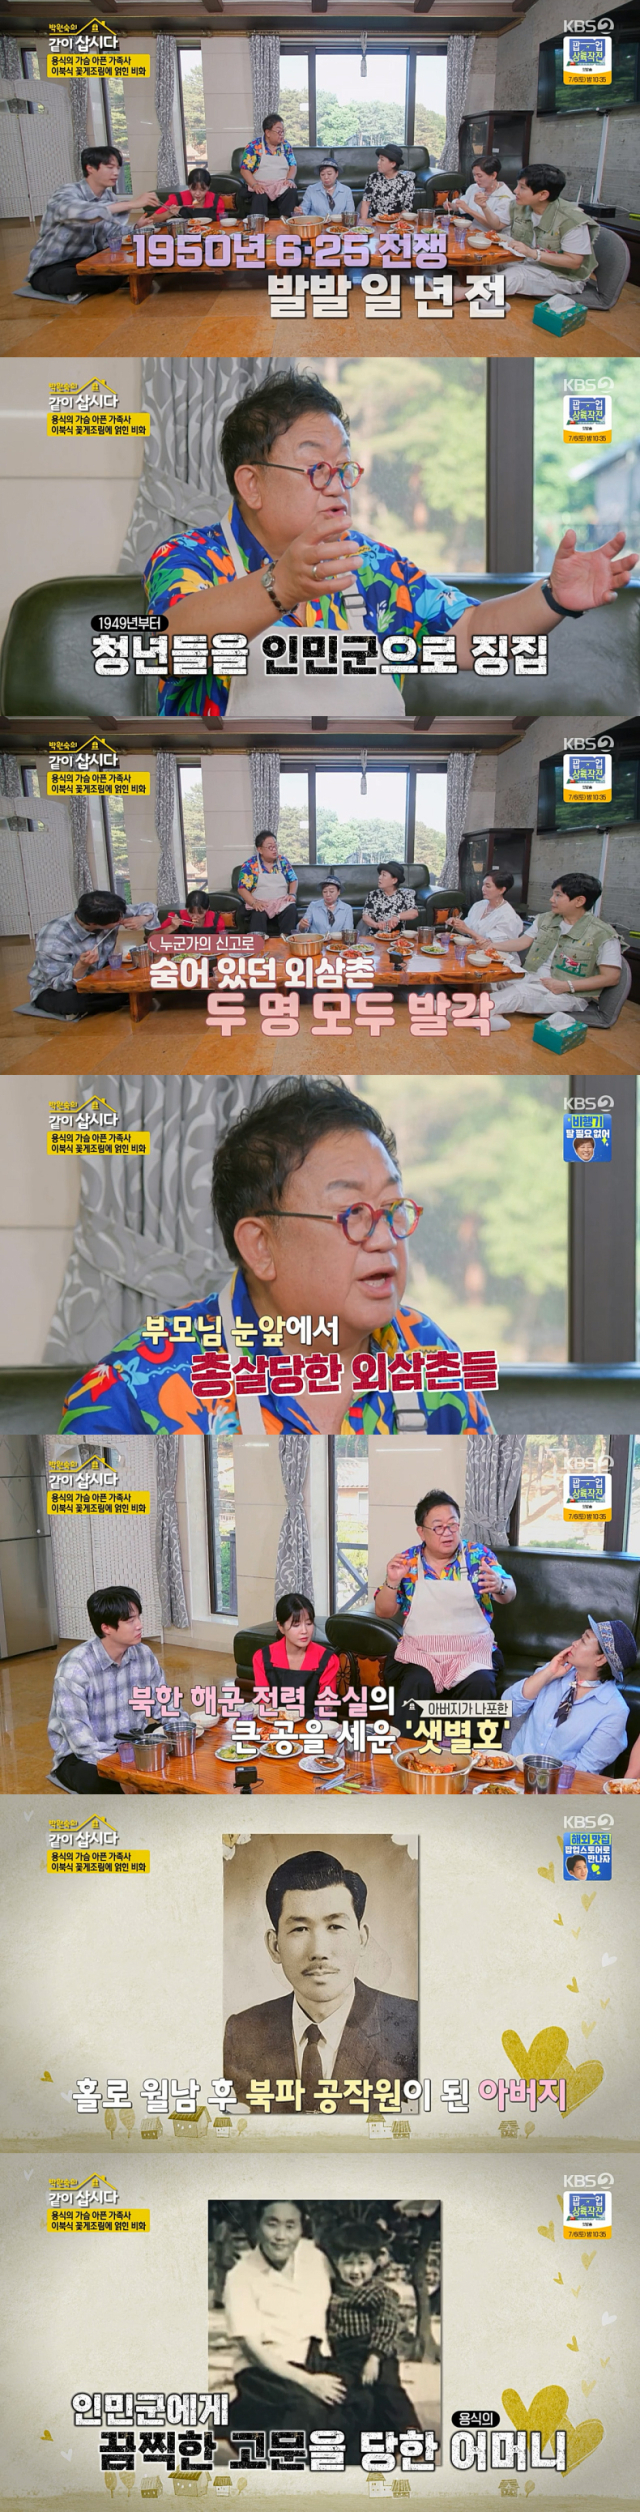 가슴 아픈 가정사를 공개한 개그맨 이용식./KBS 2TV 예능 프로그램 '박원숙의 같이 삽시다 시즌3' 방송 캡처